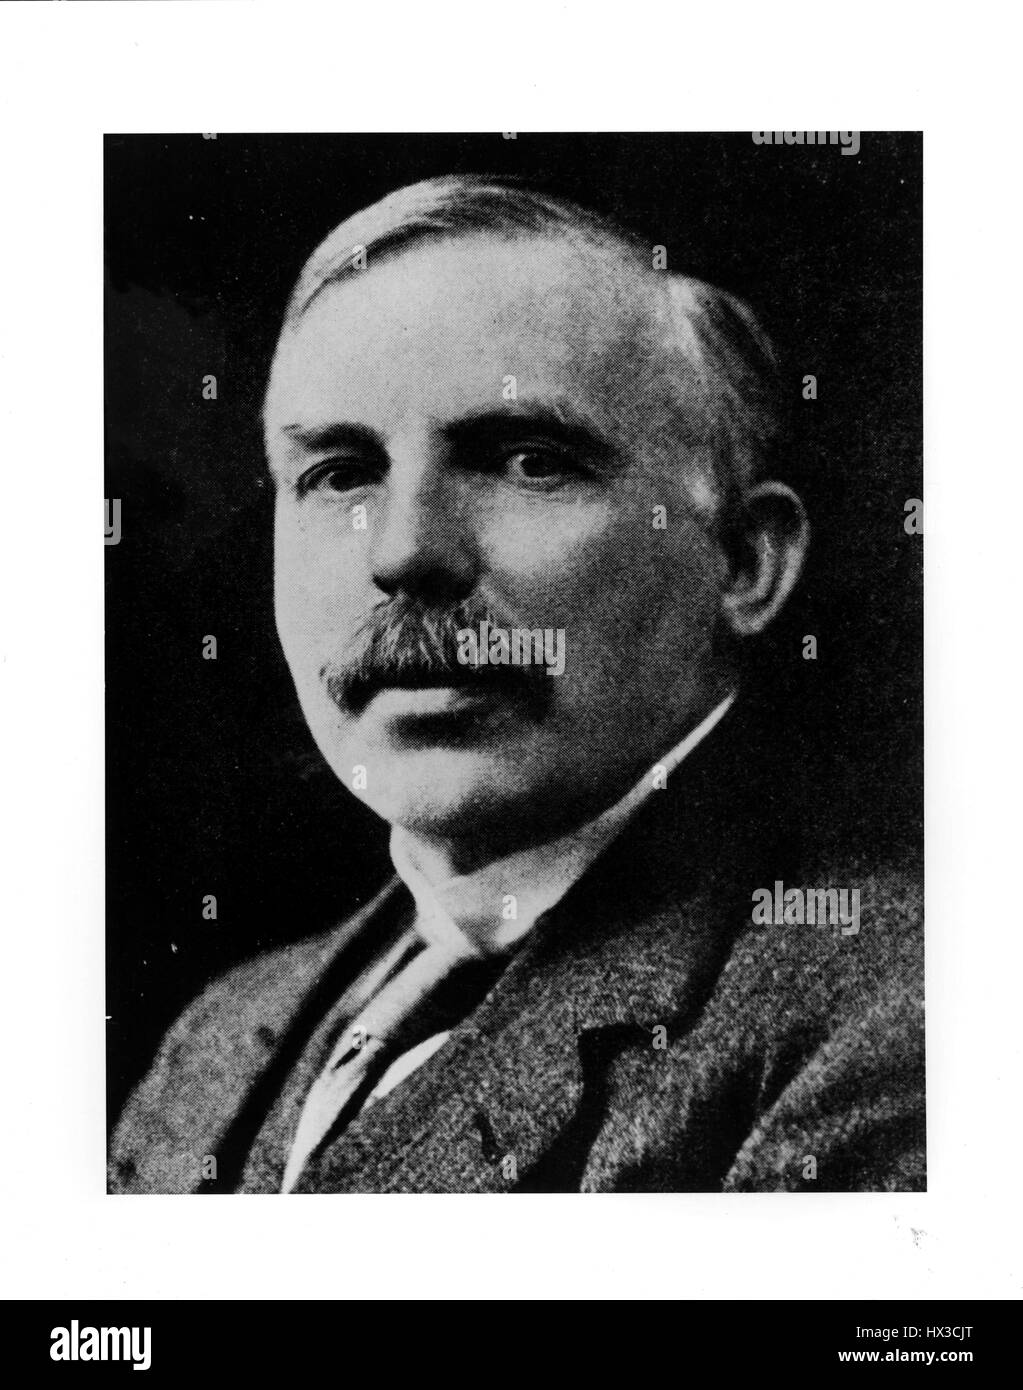 Retrato de Earnest Rutherford, ganador del Premio Nobel de Química 1908, 1920. Imagen cortesía del Departamento de Energía de Estados Unidos. Foto de stock